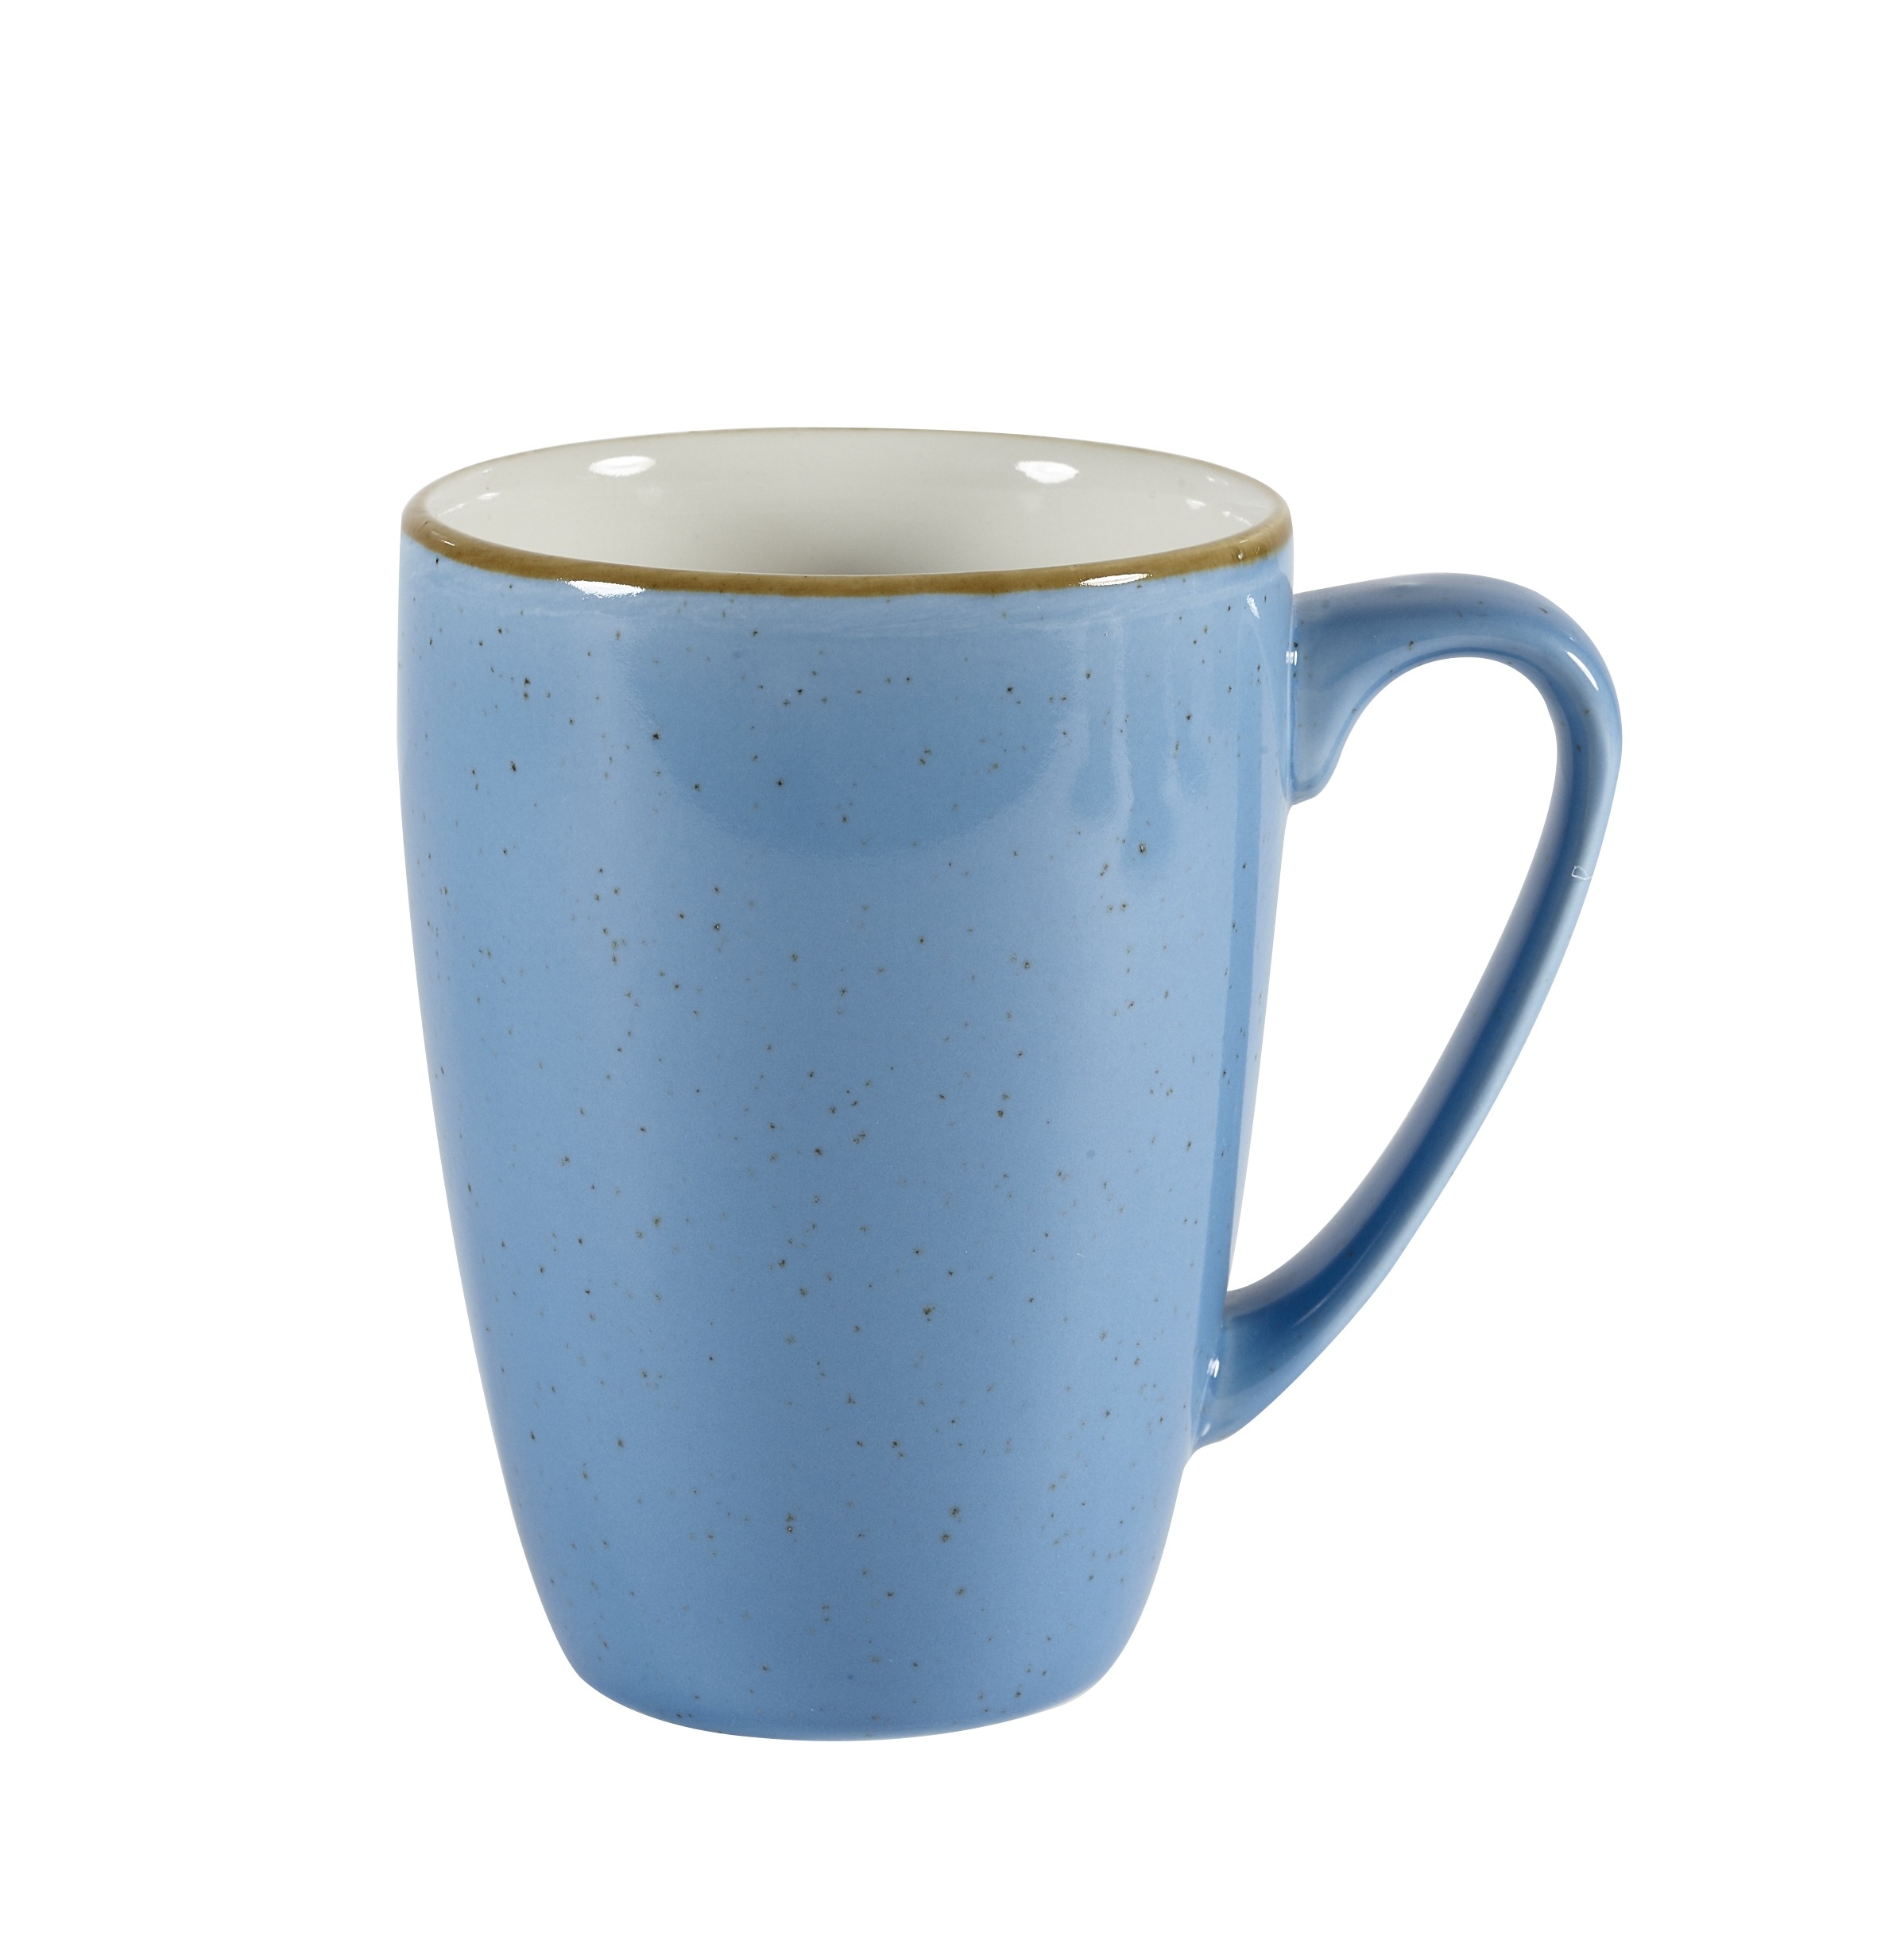 Obertasse Mug 32cl / Ø 8 / H 11cm, Cornflower Blue